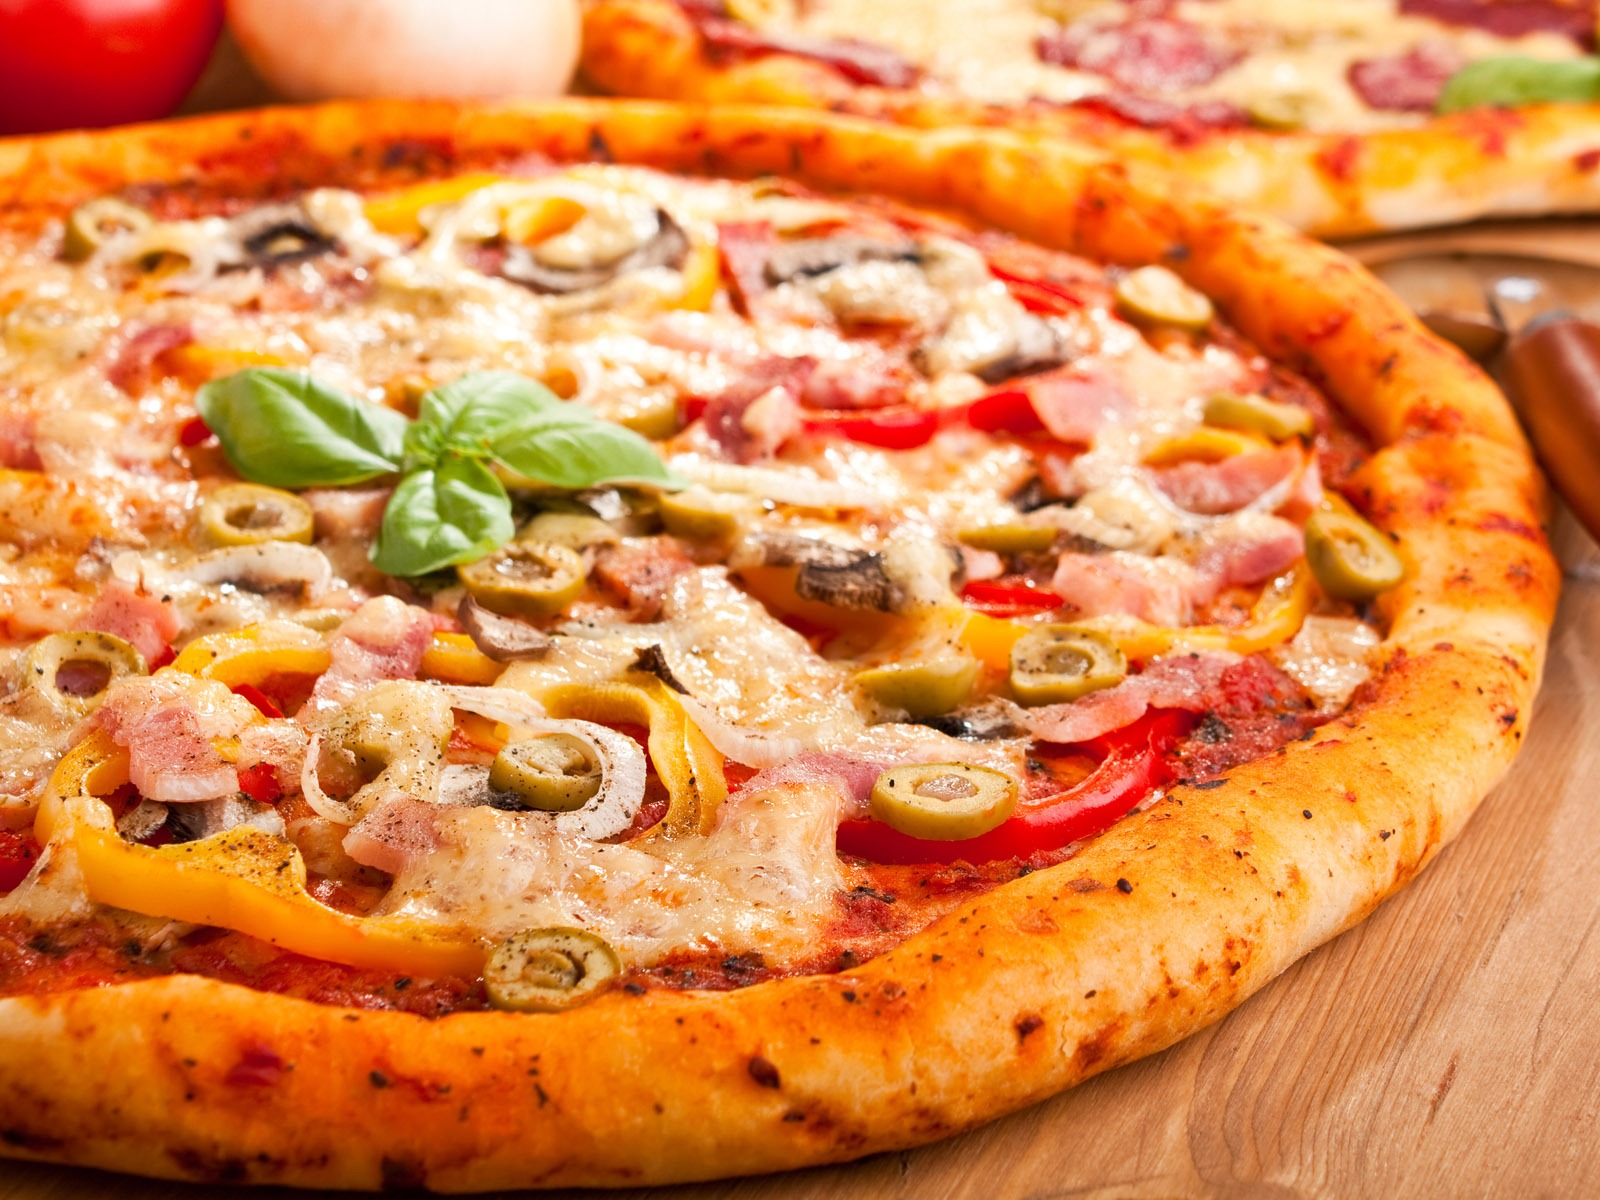 Fondos de pizzerías de Alimentos (4) #20 - 1600x1200